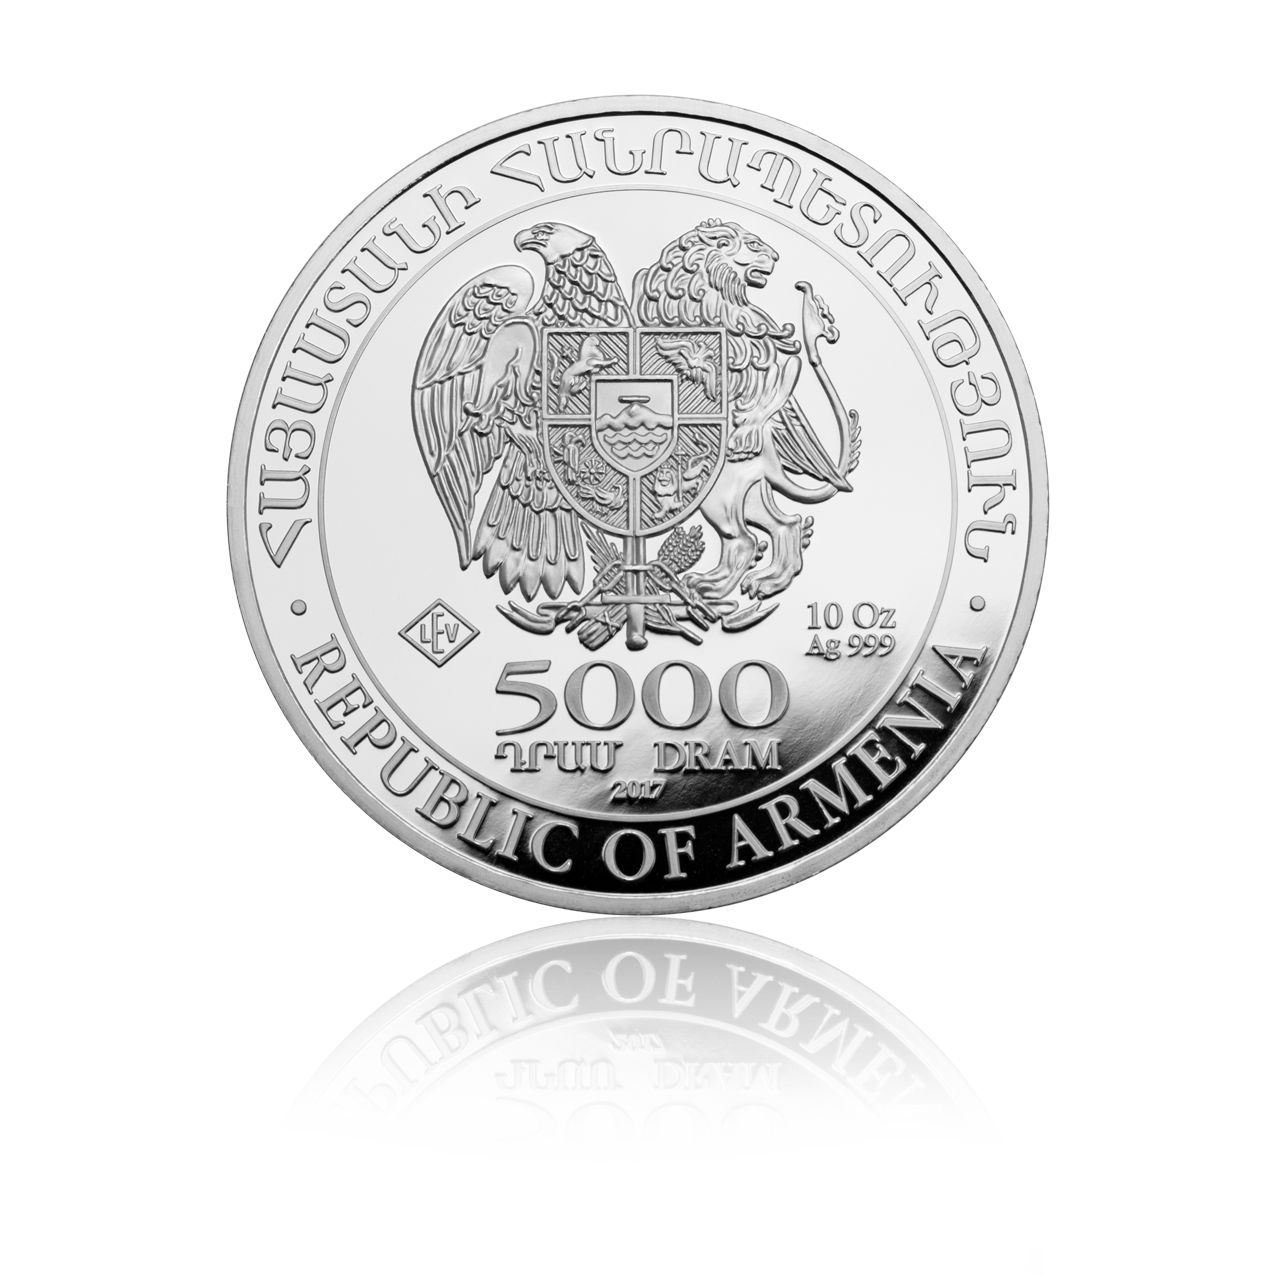 Arche Noah - Armenien 10 oz Silbermünze .999 diverse Jahrgänge